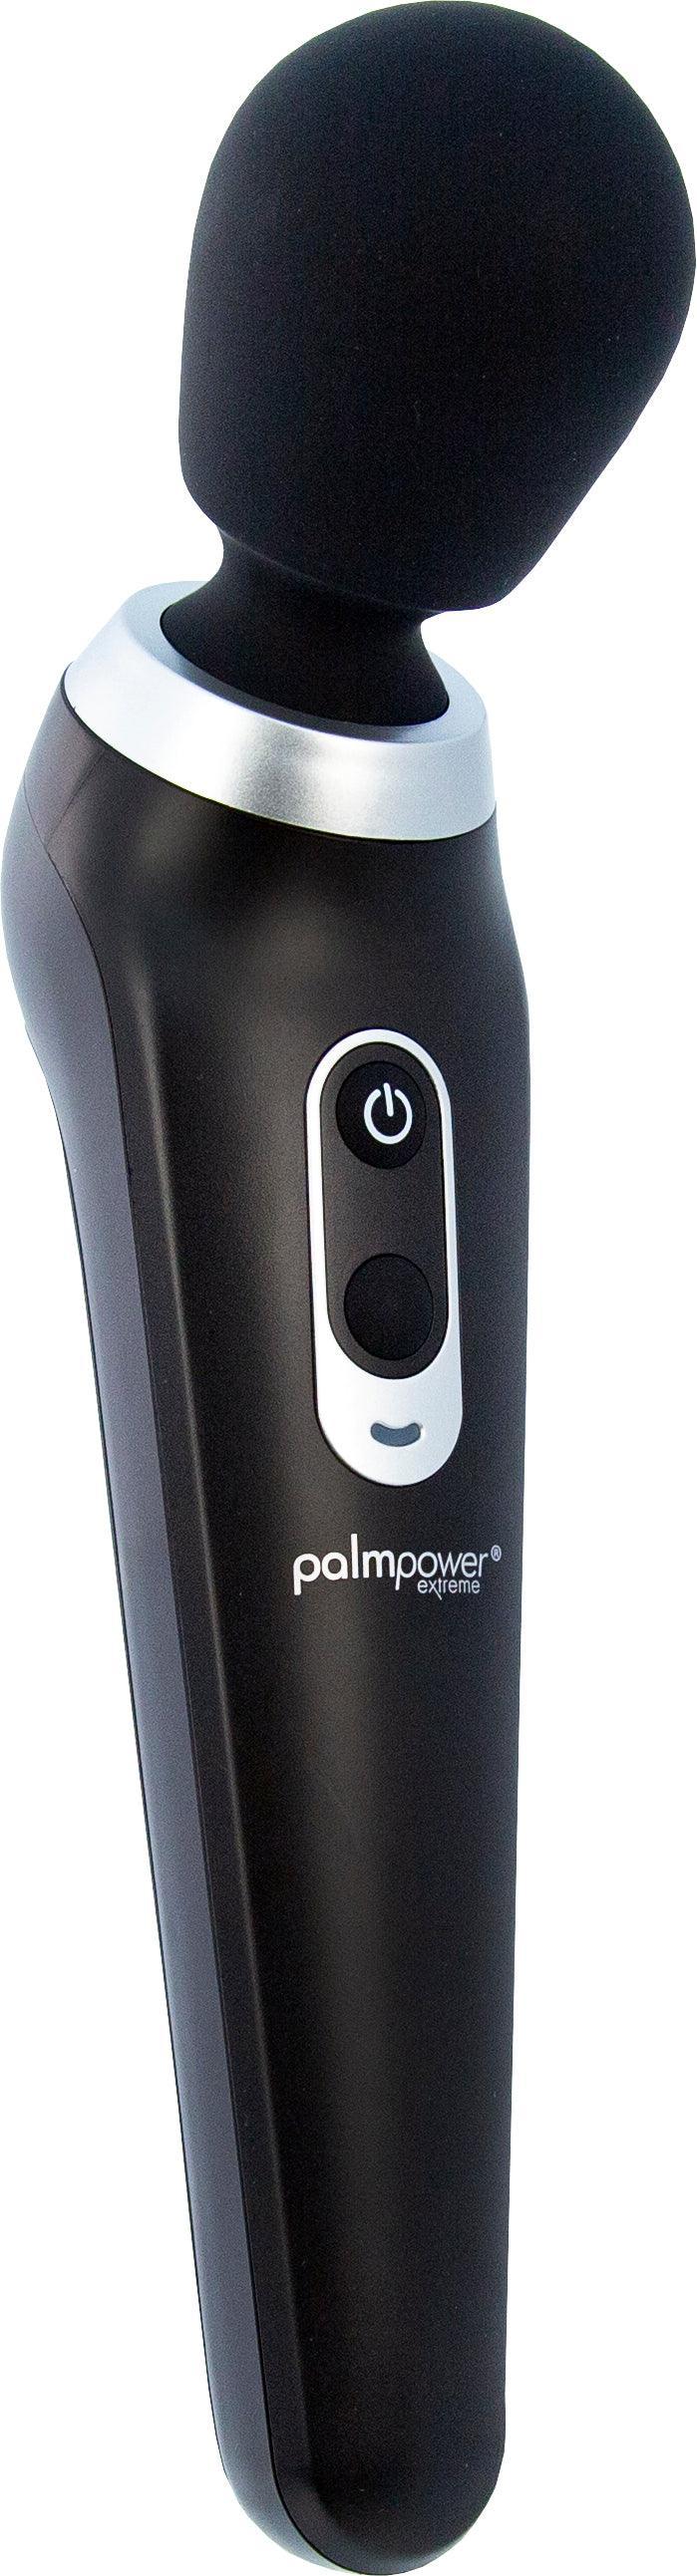 PalmPower Extreme Black - Take A Peek